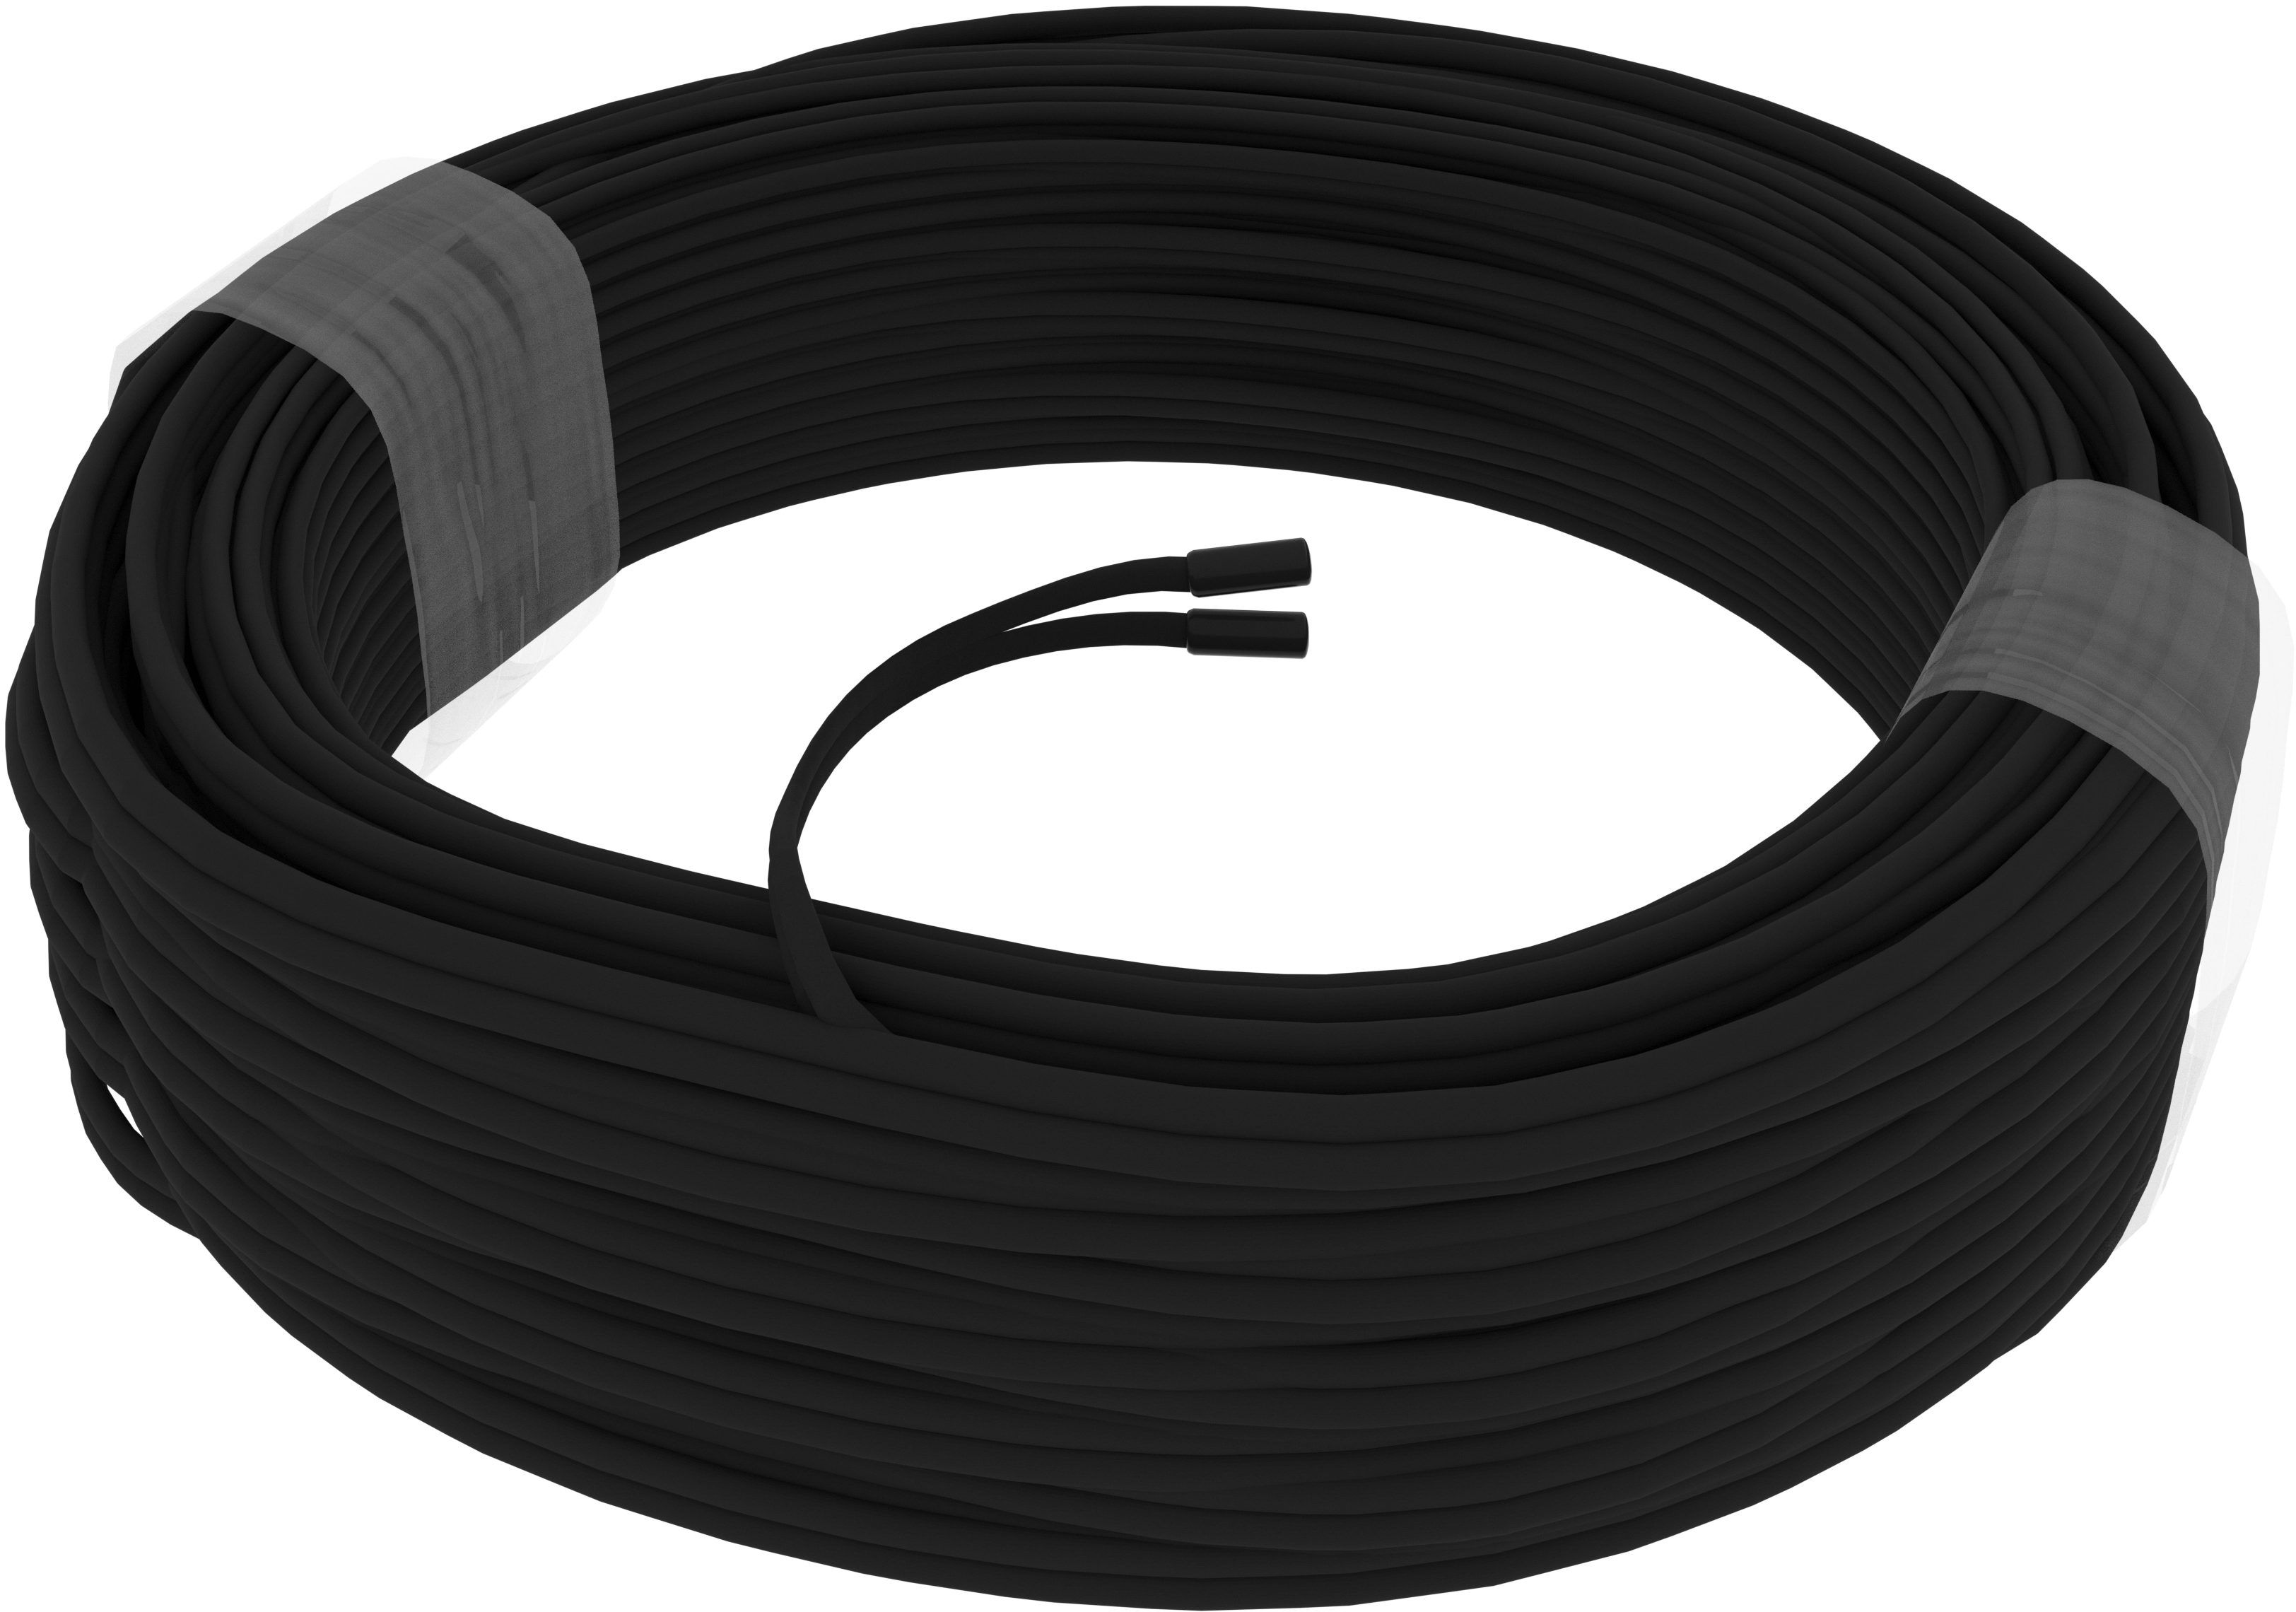 2 core 12 volt kabel 12 v im freien garten elektrische draht kabel